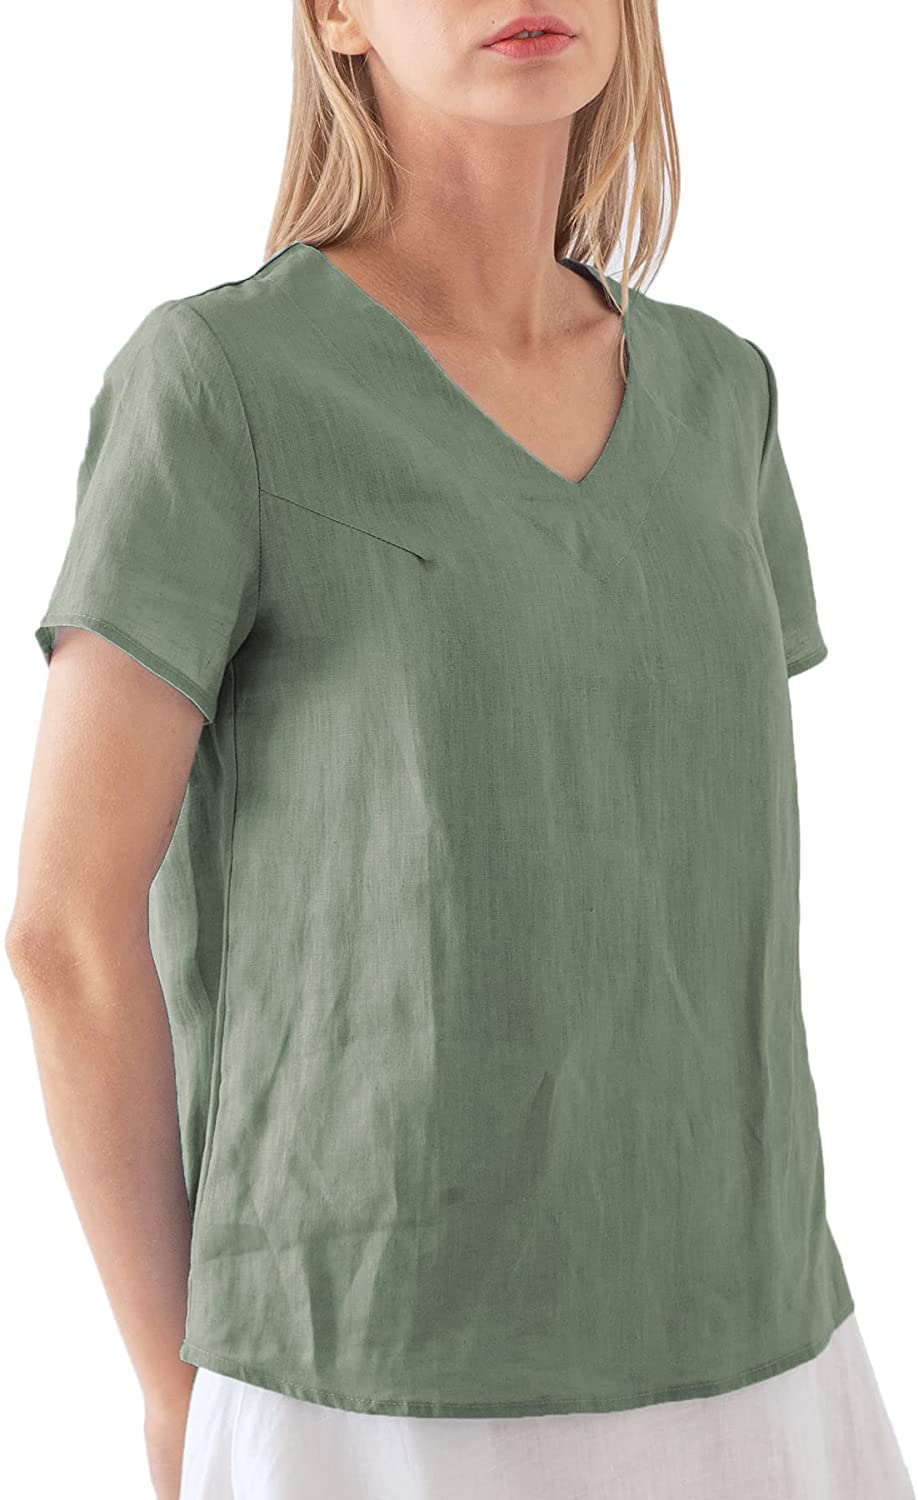 NTG Fad M / Green 100% Linen Blouse Short Sleeve Shirt